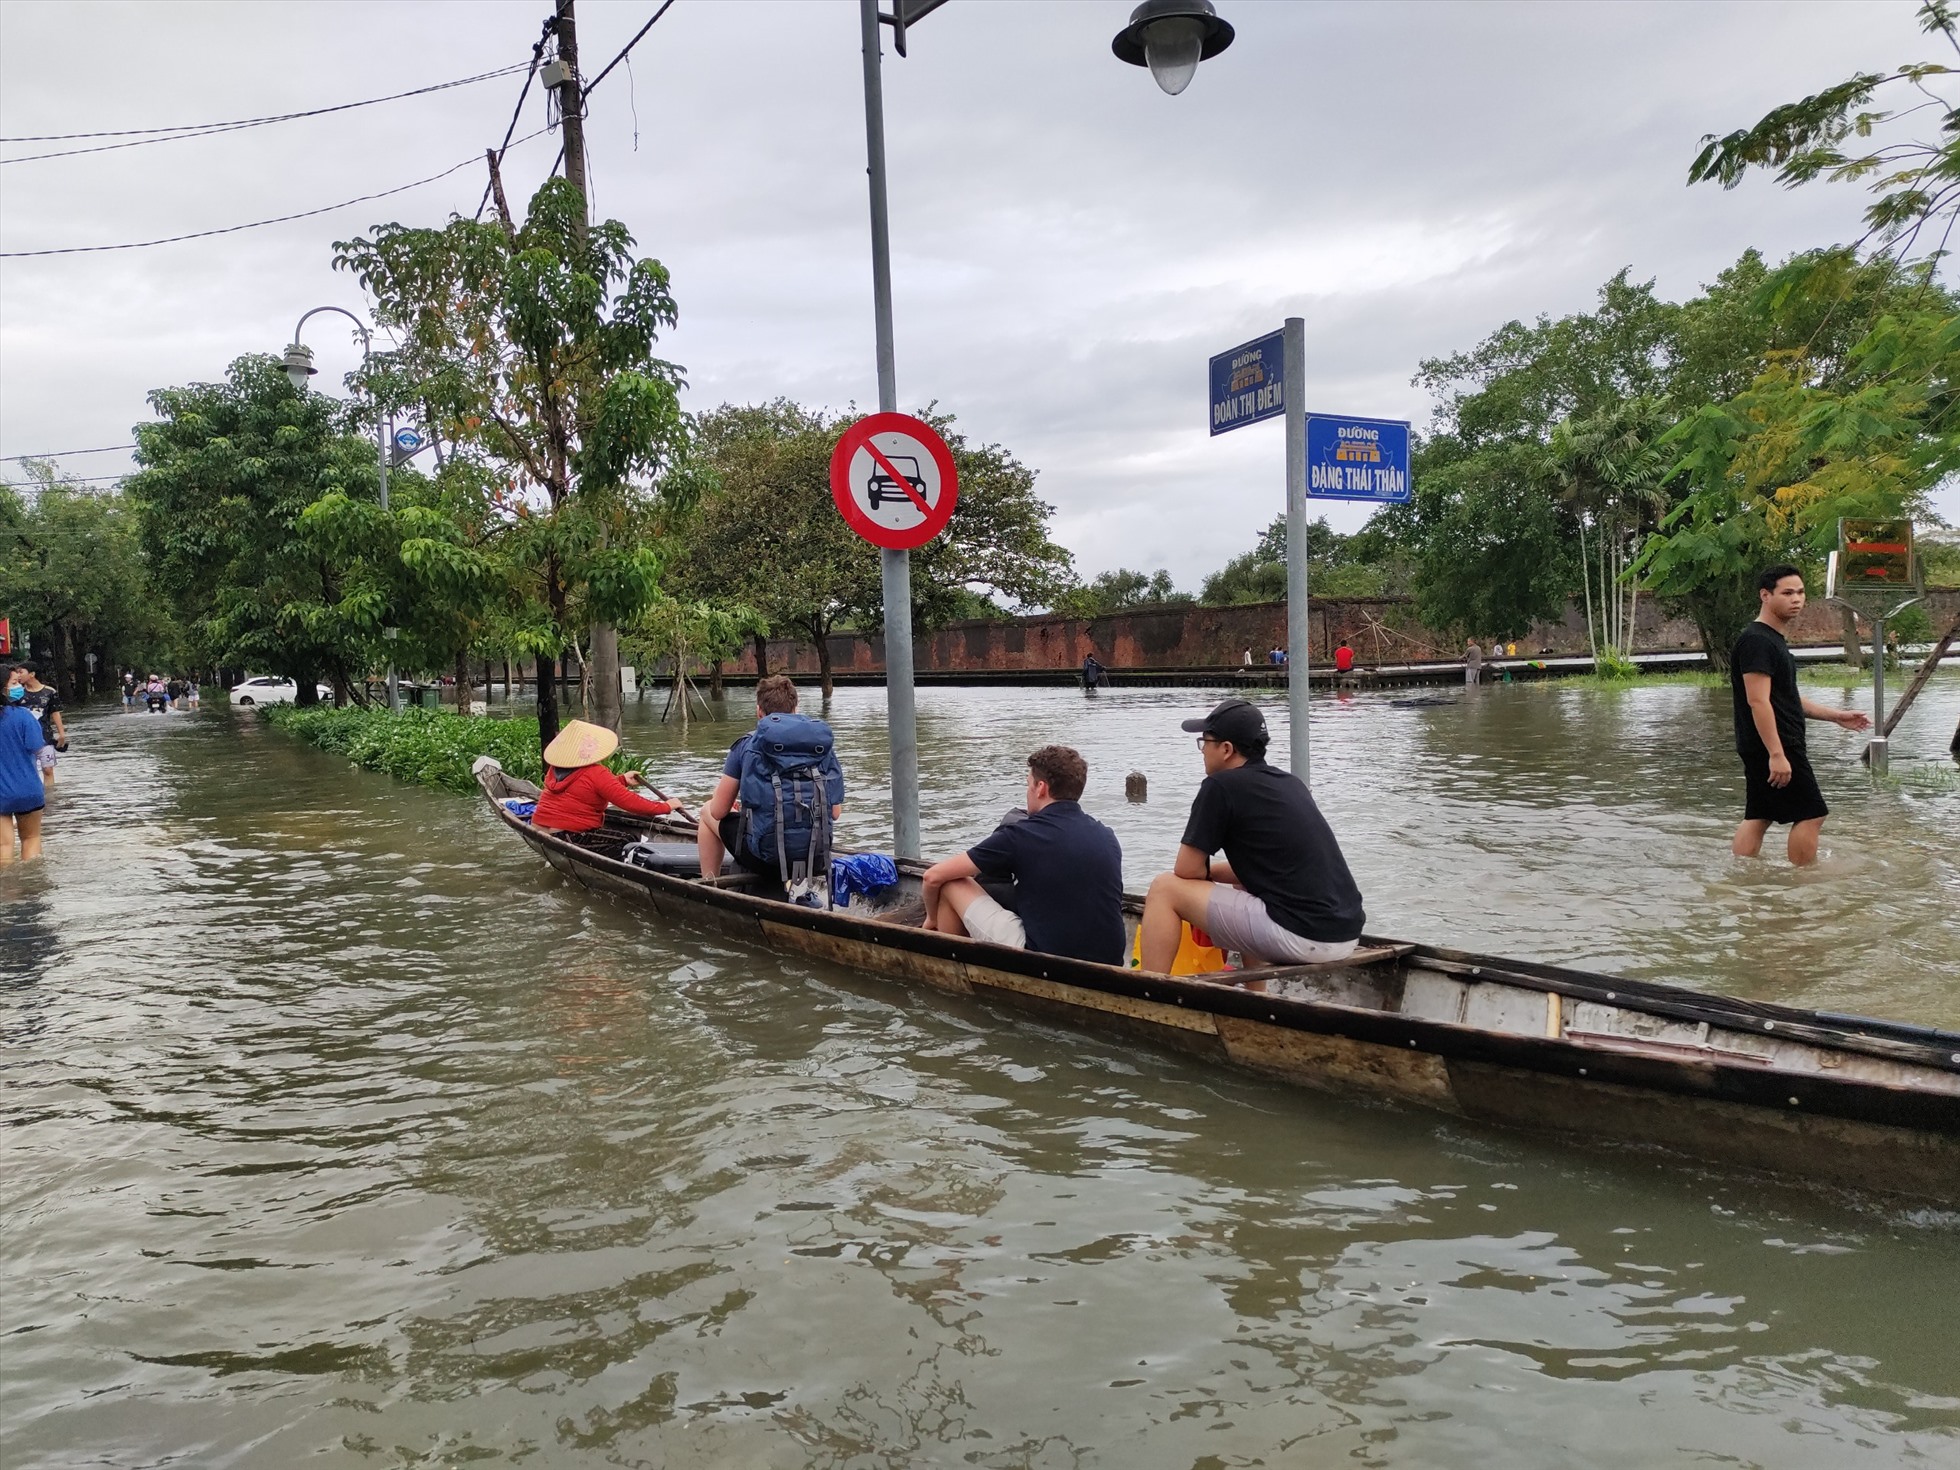 Hiện, dù mực nước đang có xu hướng giảm nhưng những địa bàn trọng yếu, thấp trũng như TP. Huế, huyện Quảng Điền, thị xã Hương Thủy vẫn còn ngập, nhiều điểm ngập nặng.